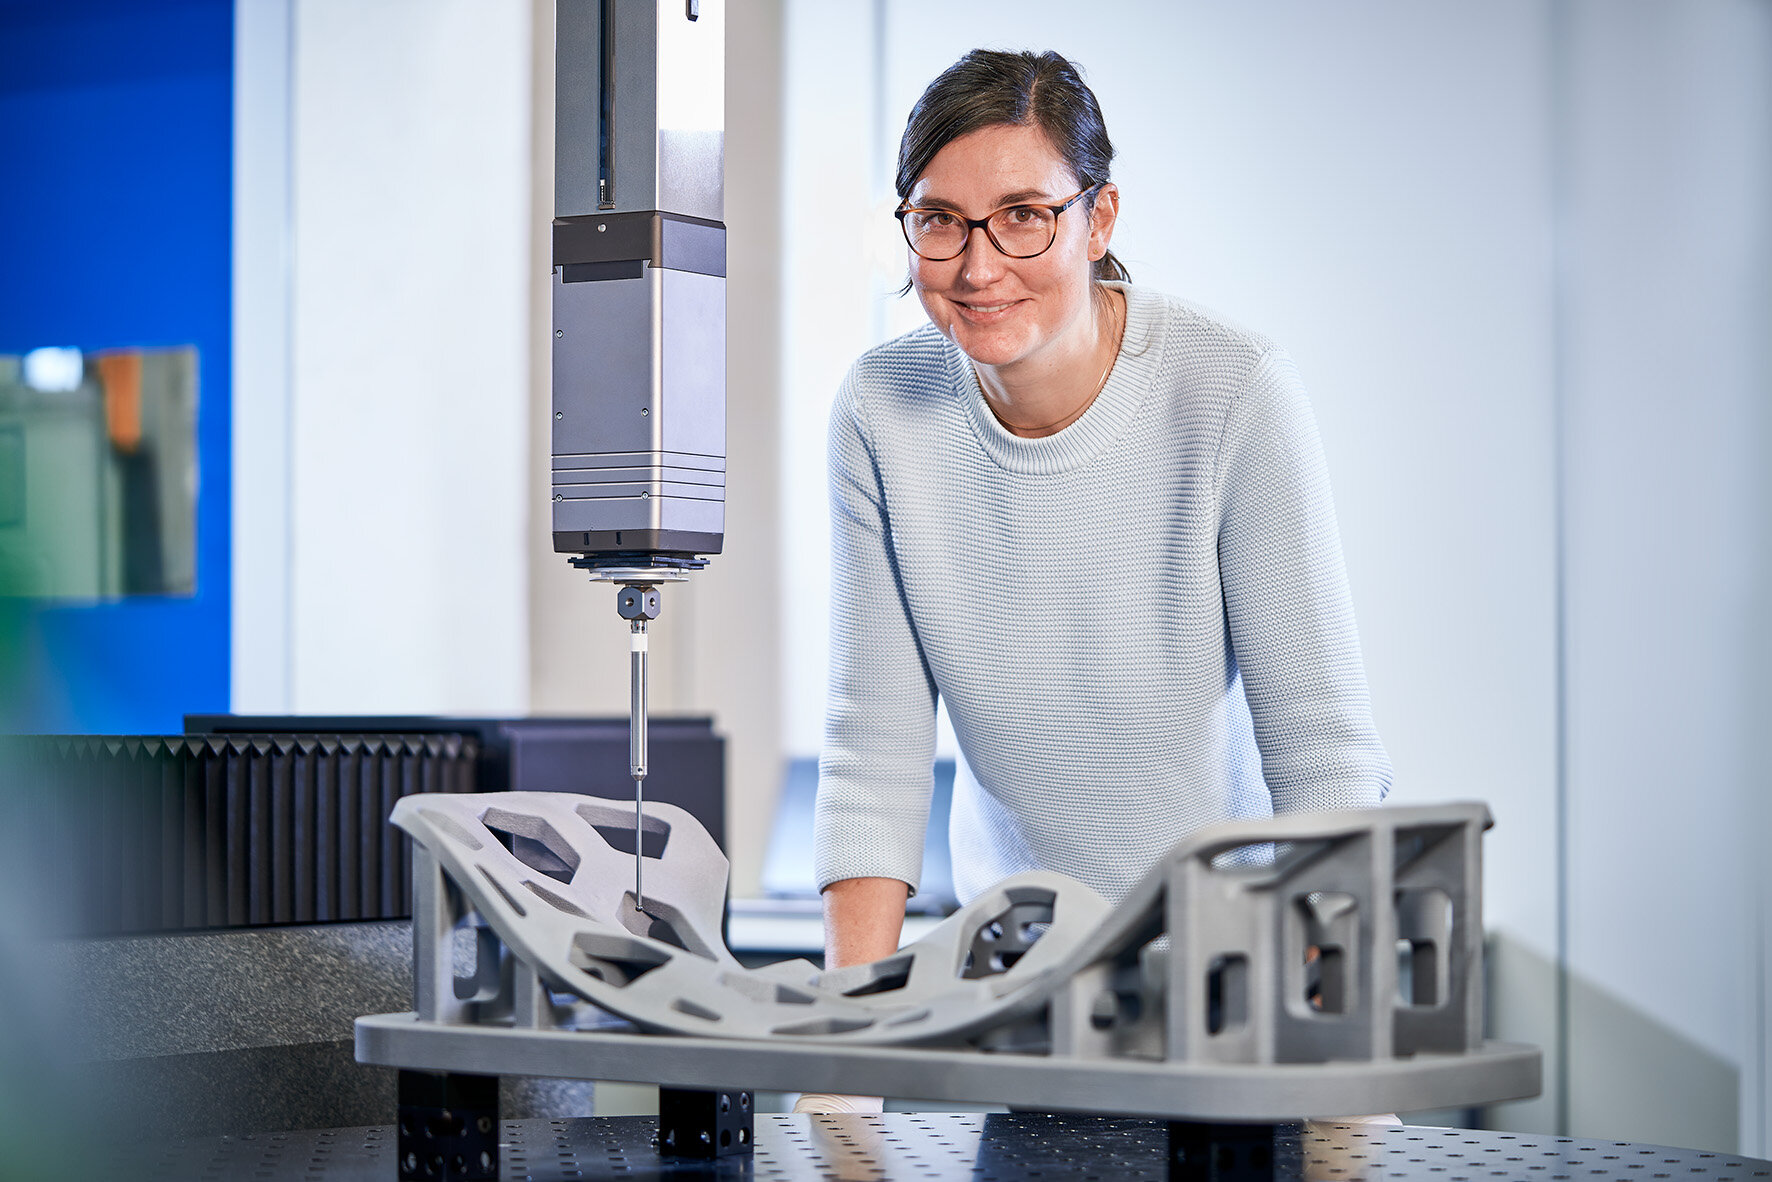  Clara Minas-Payamyar gucckt in die Kamera und arbeitet daran, das 3D-Druck-Verfahren für keramische Komponenten weiterzuentwickeln 